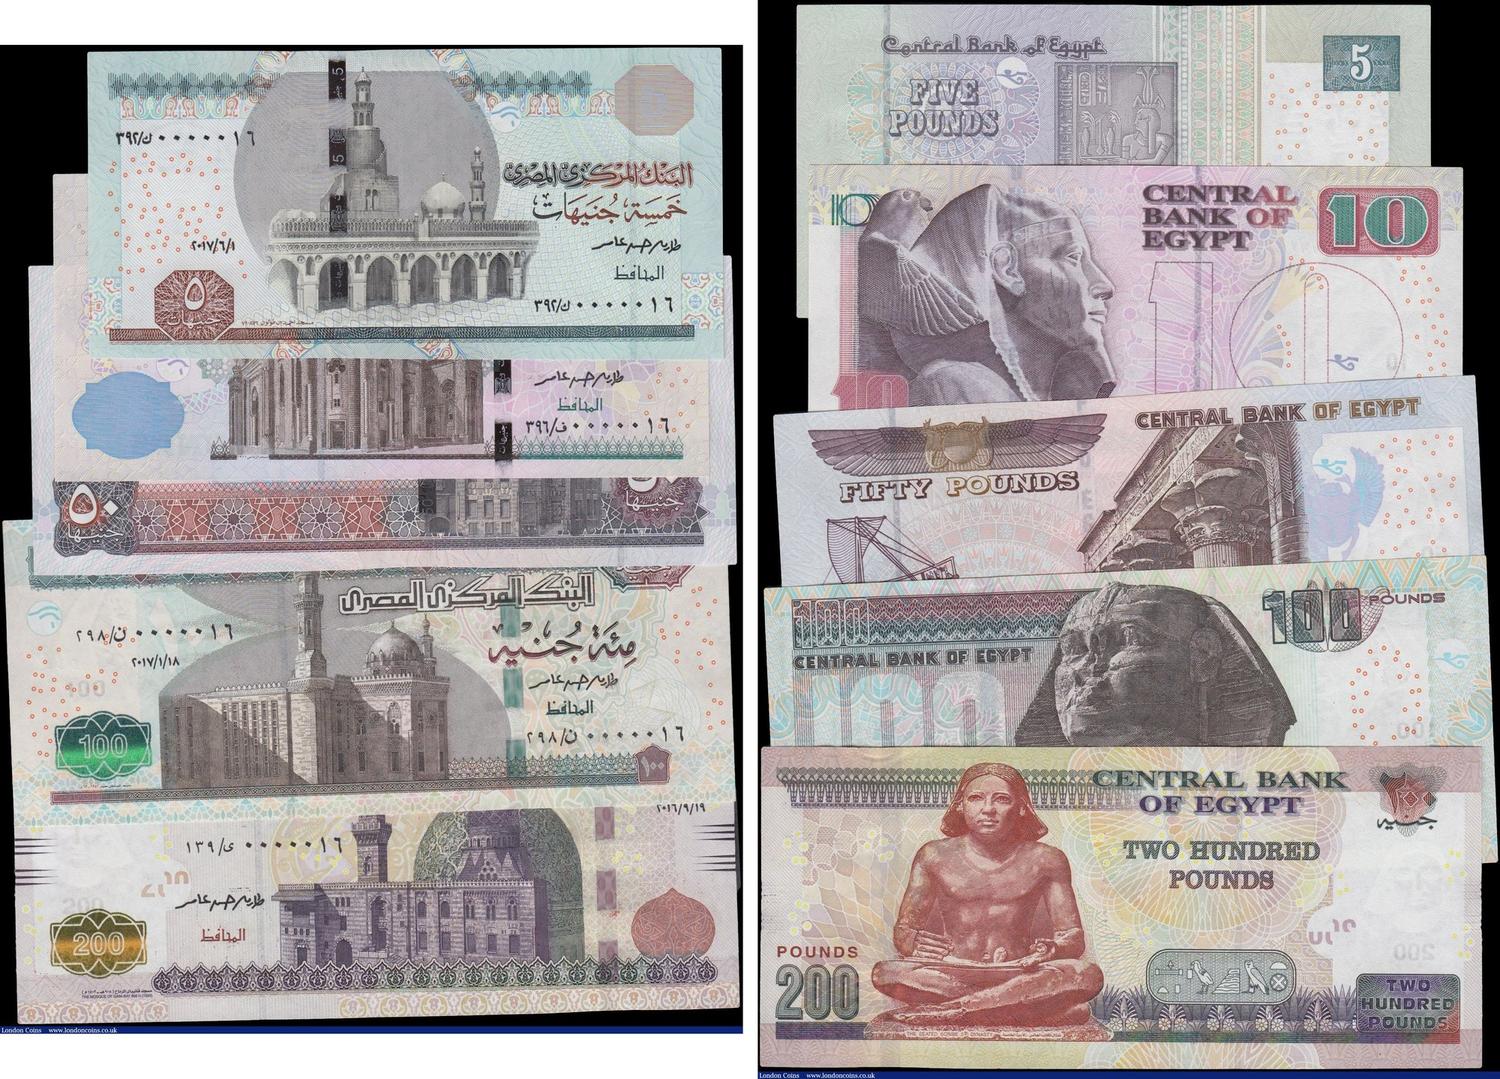 Egypt Central Bank (5), 200 Pounds, 100 Pounds, 50 Pounds, 10 Pounds... 